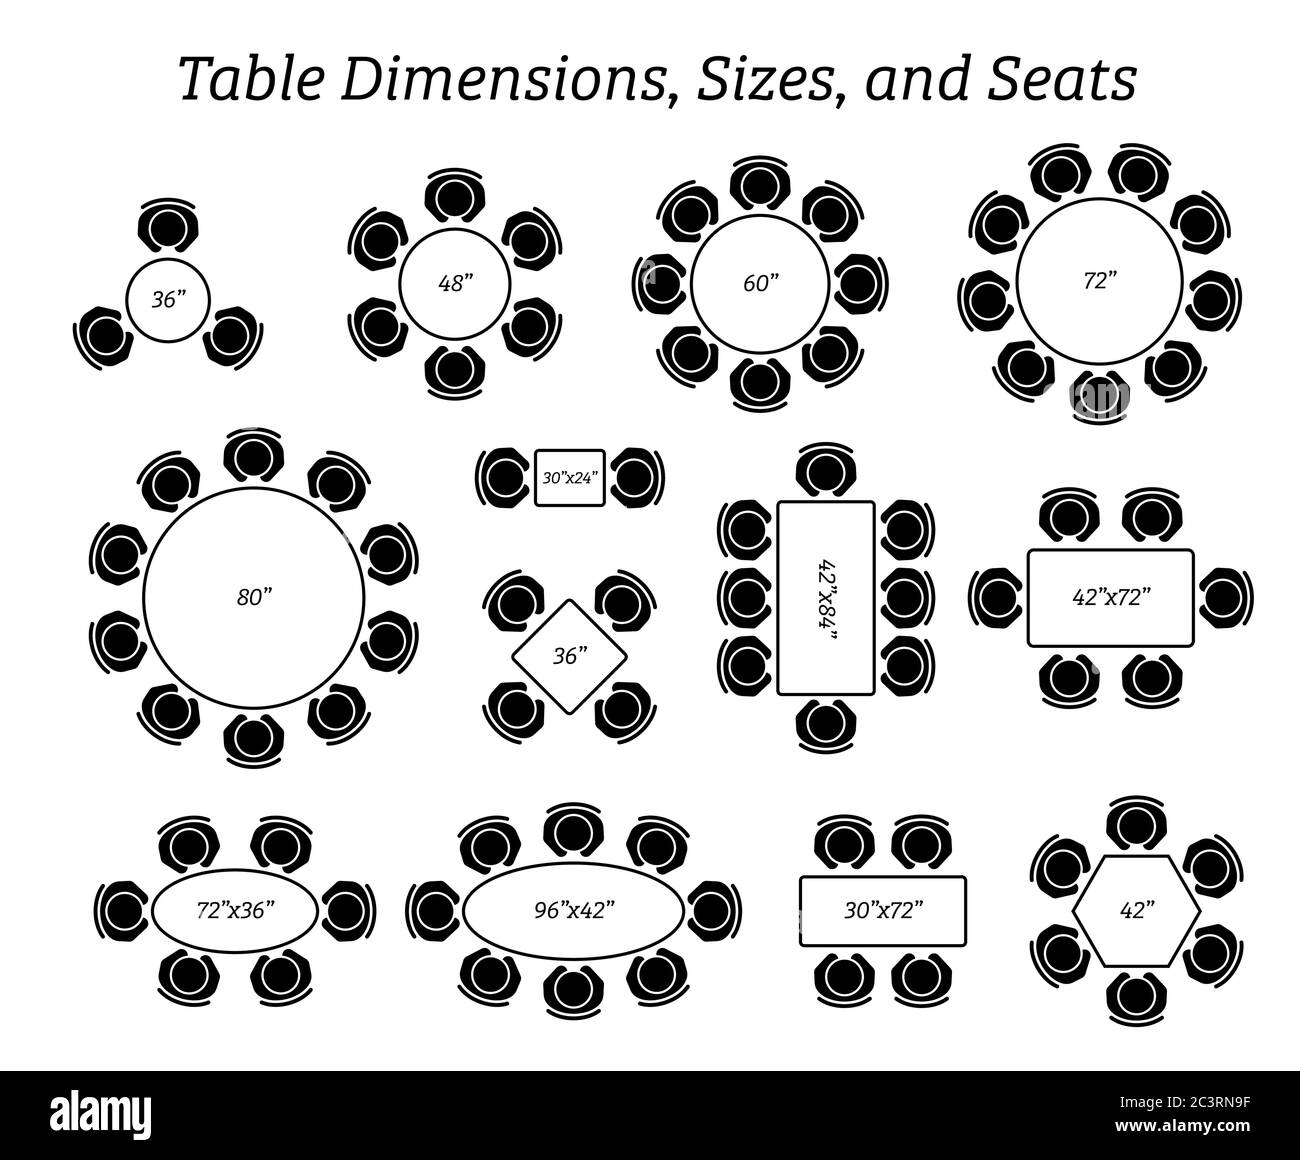 Dimensioni, dimensioni e posti a sedere del tavolo rotondo, ovale e  rettangolare. Le icone dei pittogrammi rappresentano la vista dall'alto e  il numero di posti a sedere in diversi tipi di tavolo